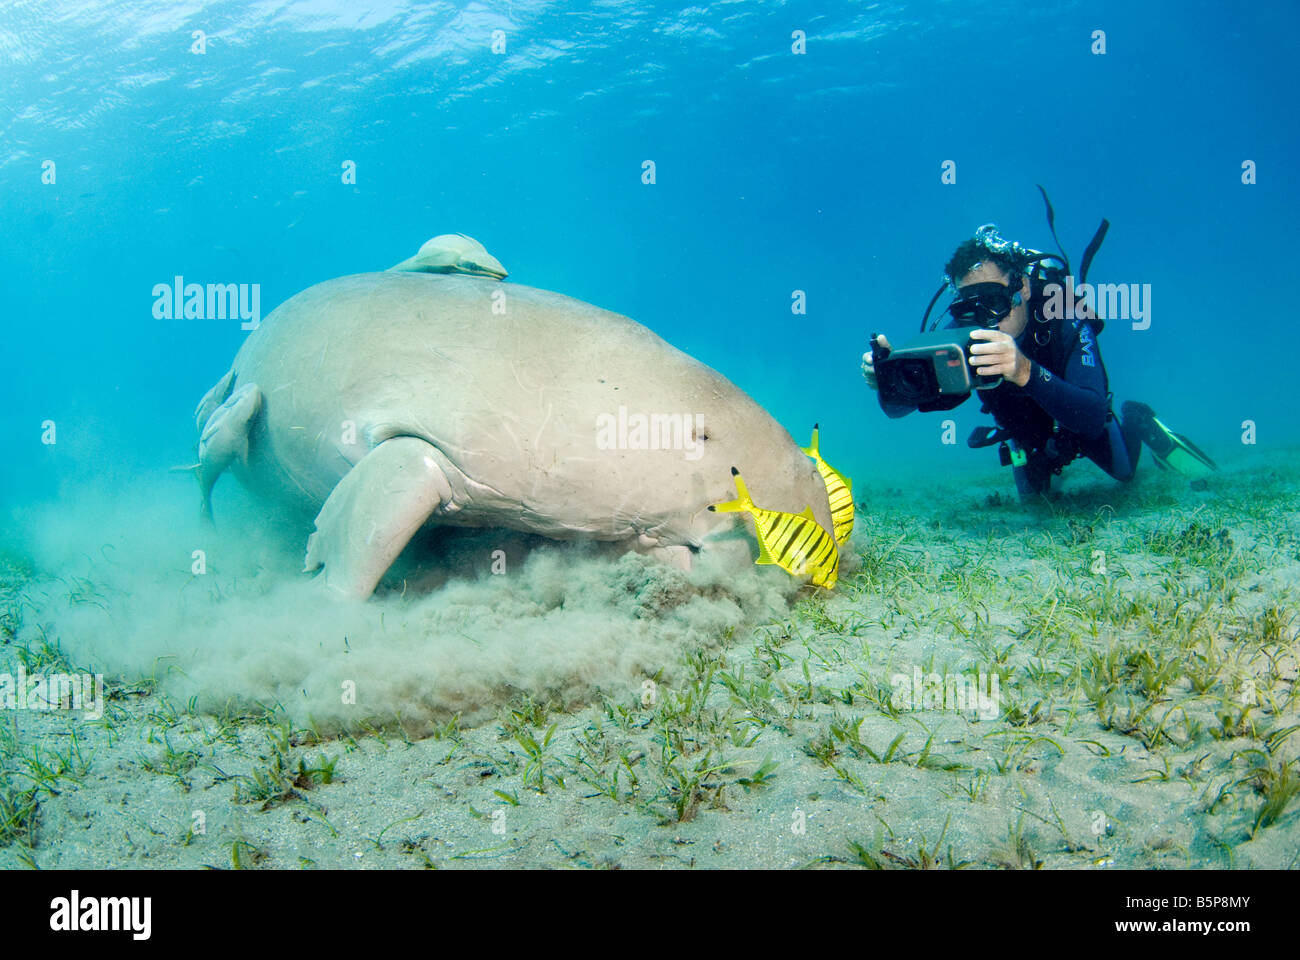 Dugong Sea Cow se nourrissant de l'herbe marine Gnathanodon Speciosus scuab diver Egypte Mer Rouge Océan Indien Banque D'Images